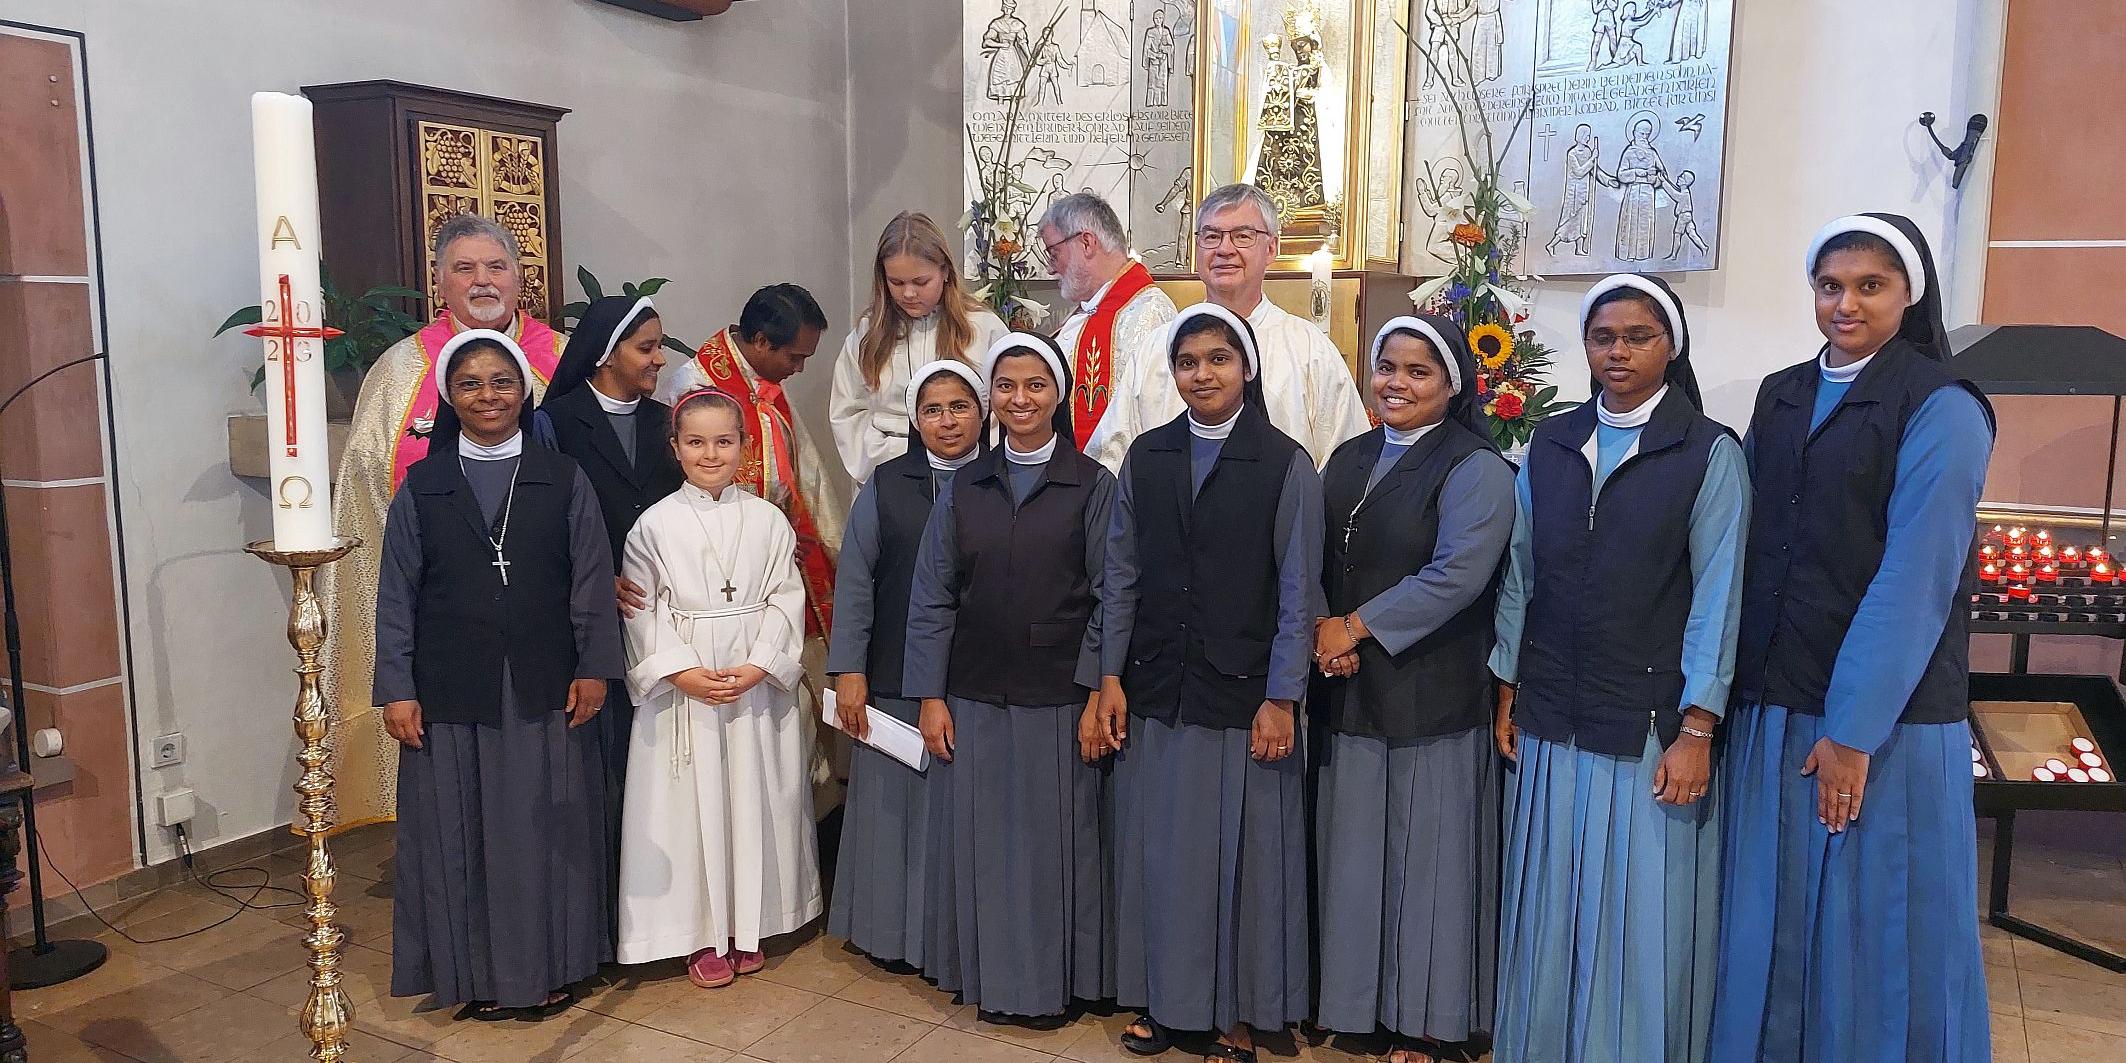 Einen der Gottesdienste bei der Wallfahrt leitete der indische Kooperator – Ordensschwestern aus dem Land gestalteten ihn mit.